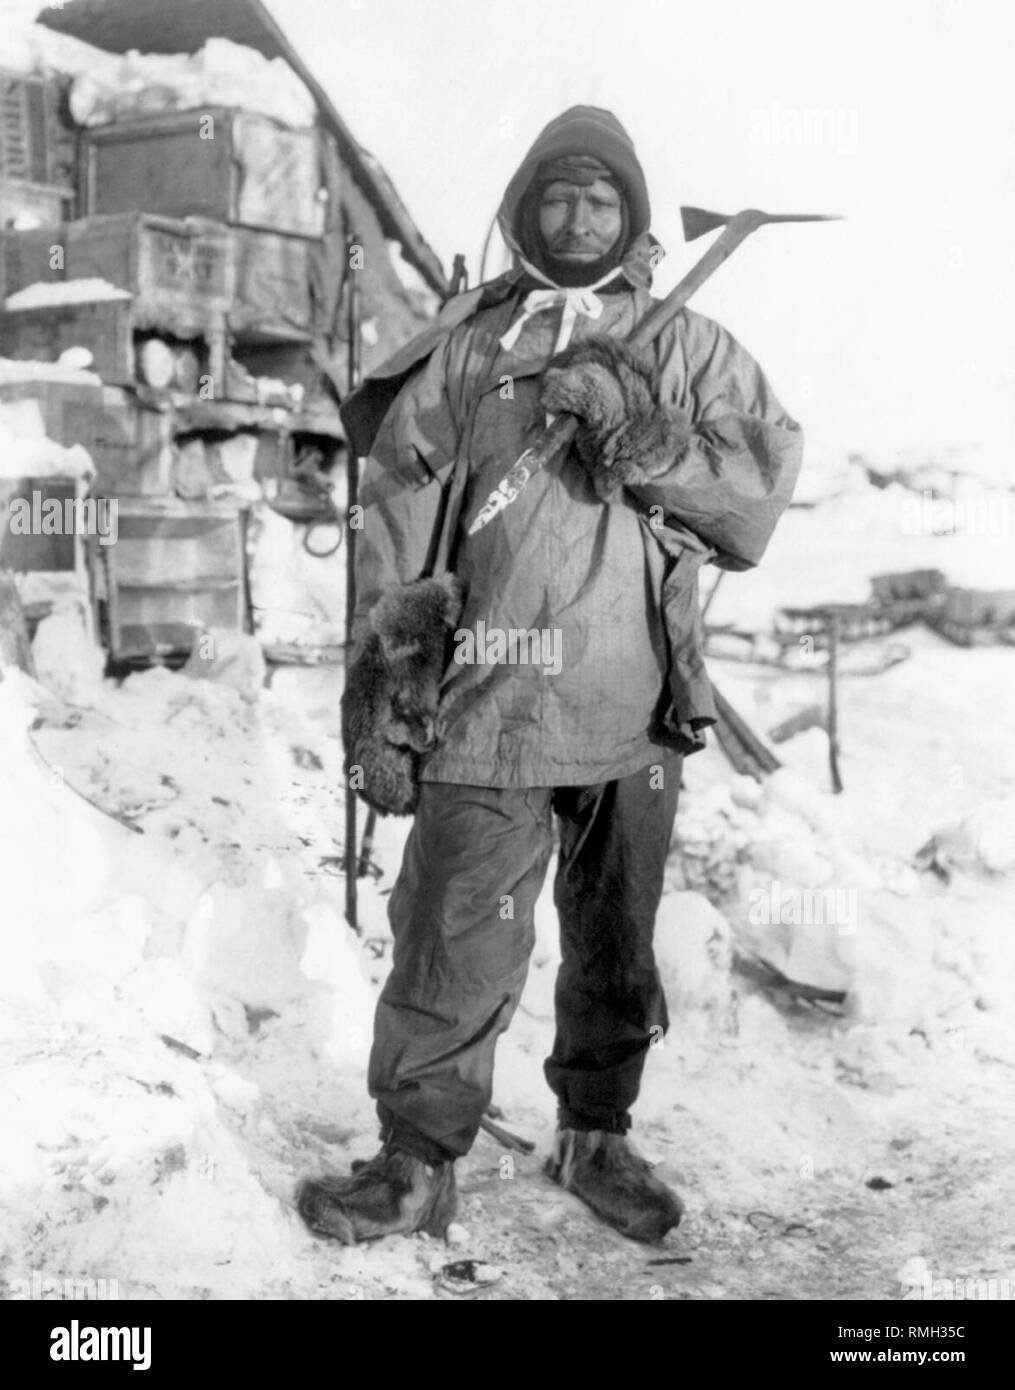 Le premier maître de edgar evans une partie de l'expédition Terra Nova au cours de l'expédition Antarctique Britannique en Antarctique Photo prise 1910 Banque D'Images